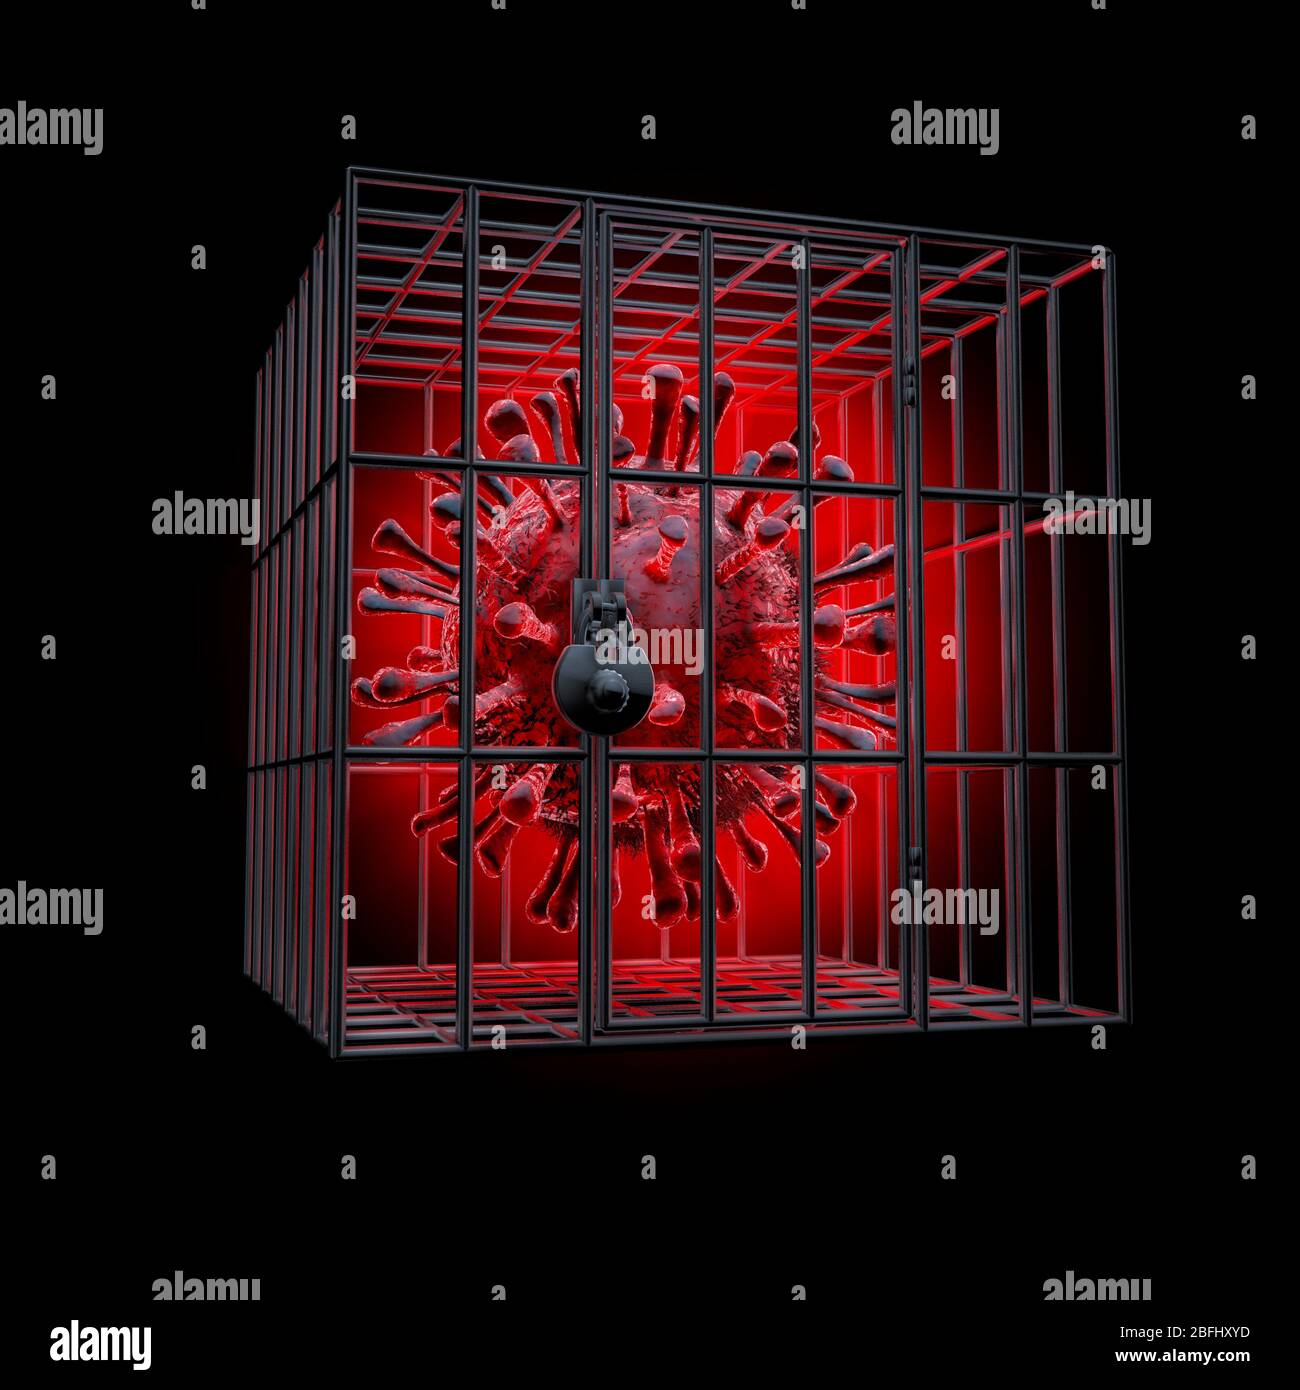 Concept de verrouillage de quarantaine Covid-19 / illustration tridimensionnelle de la cellule rouge de coronavirus verrouillée dans une cage métallique isolée sur fond noir Banque D'Images